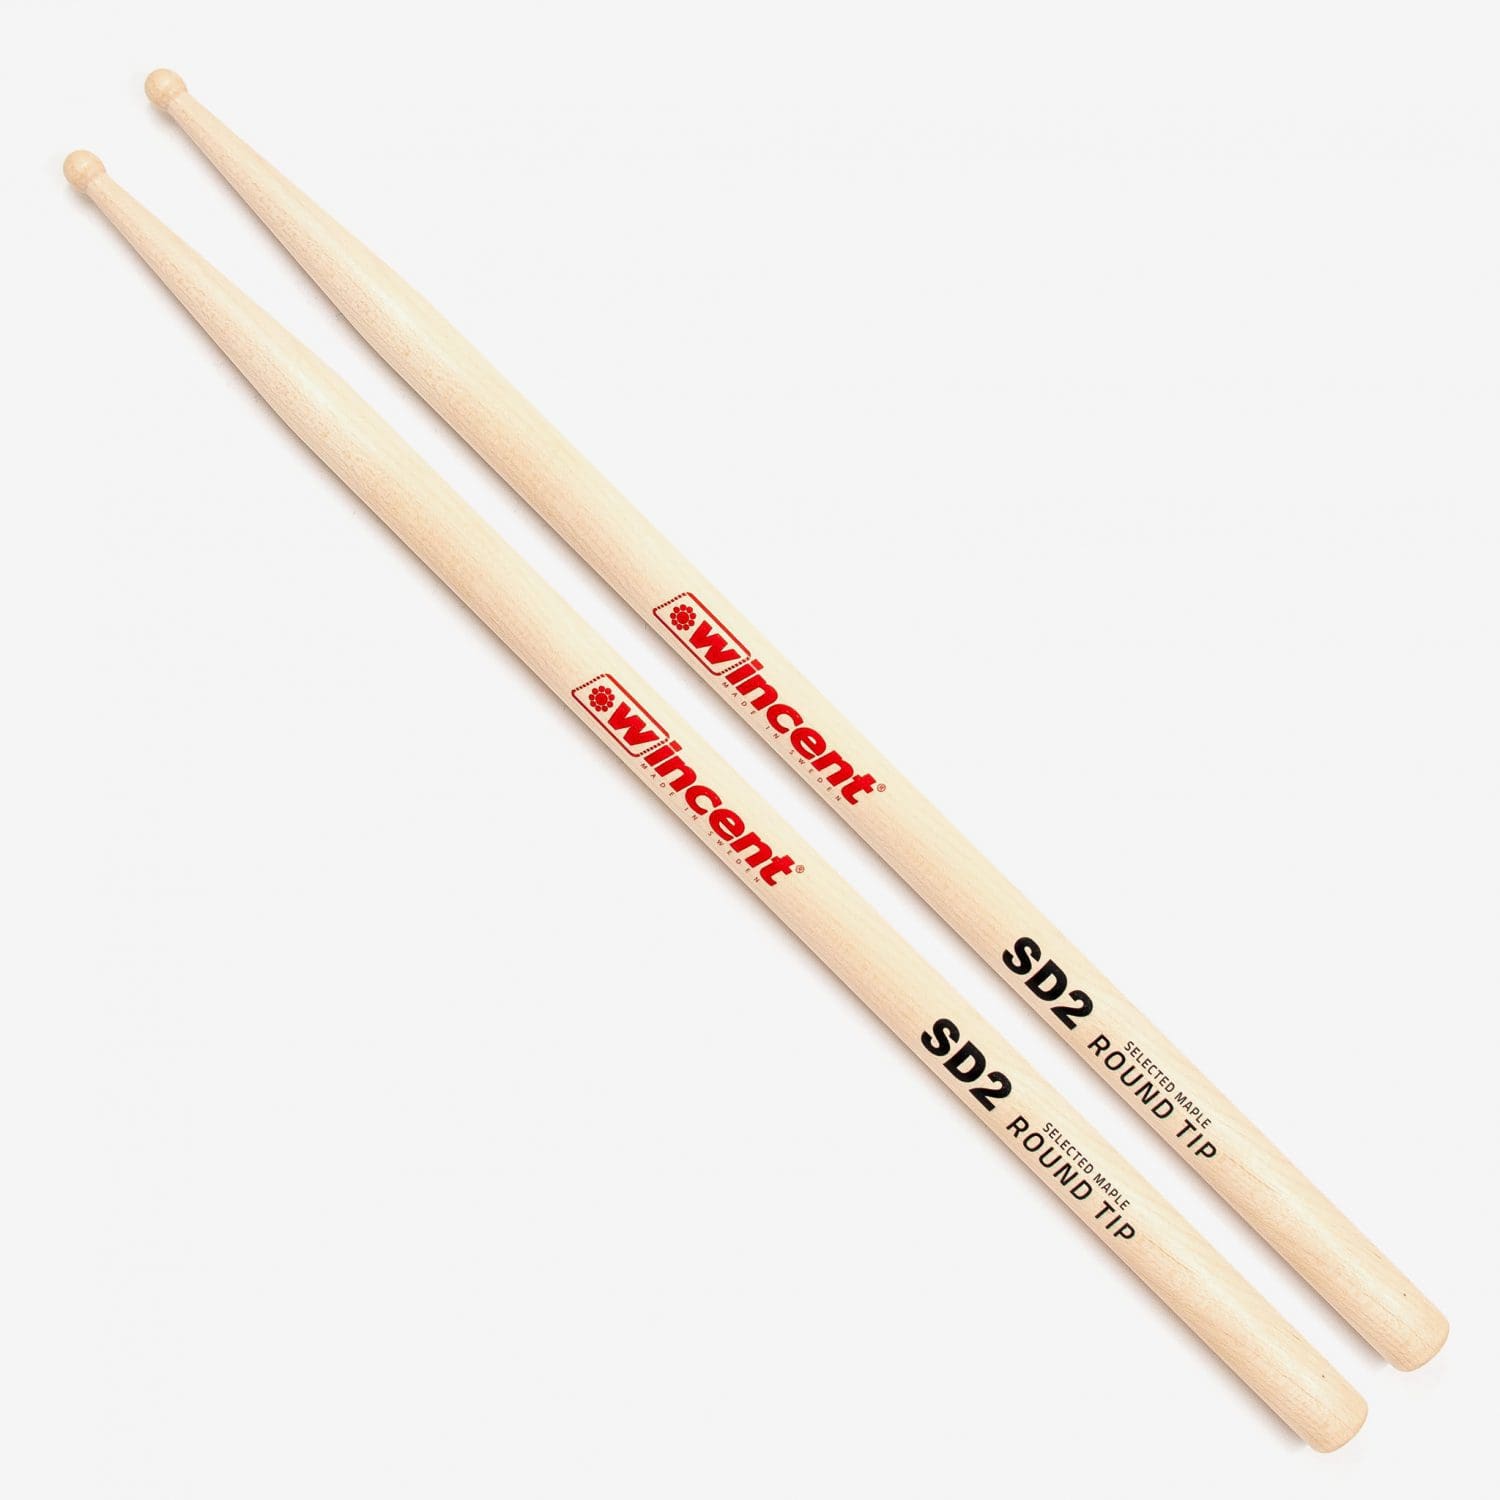 Maple Round Tip Snare Drum Sticks